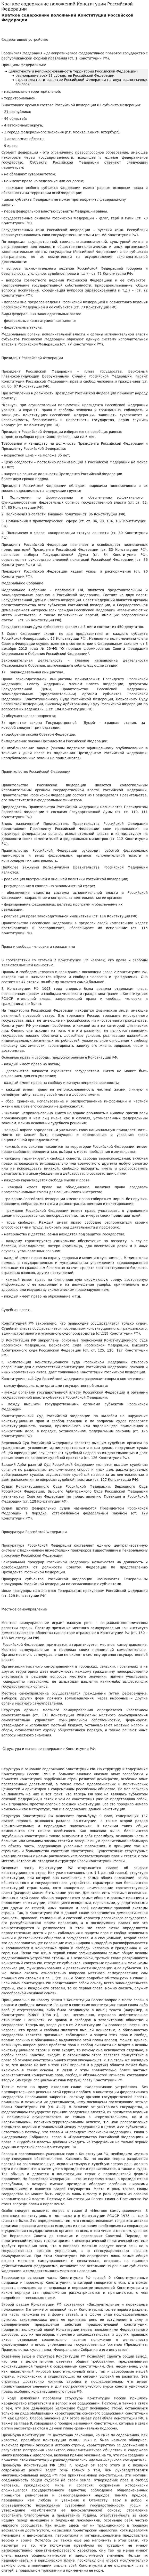 Краткое содержание положений Конституции Российской Федерации